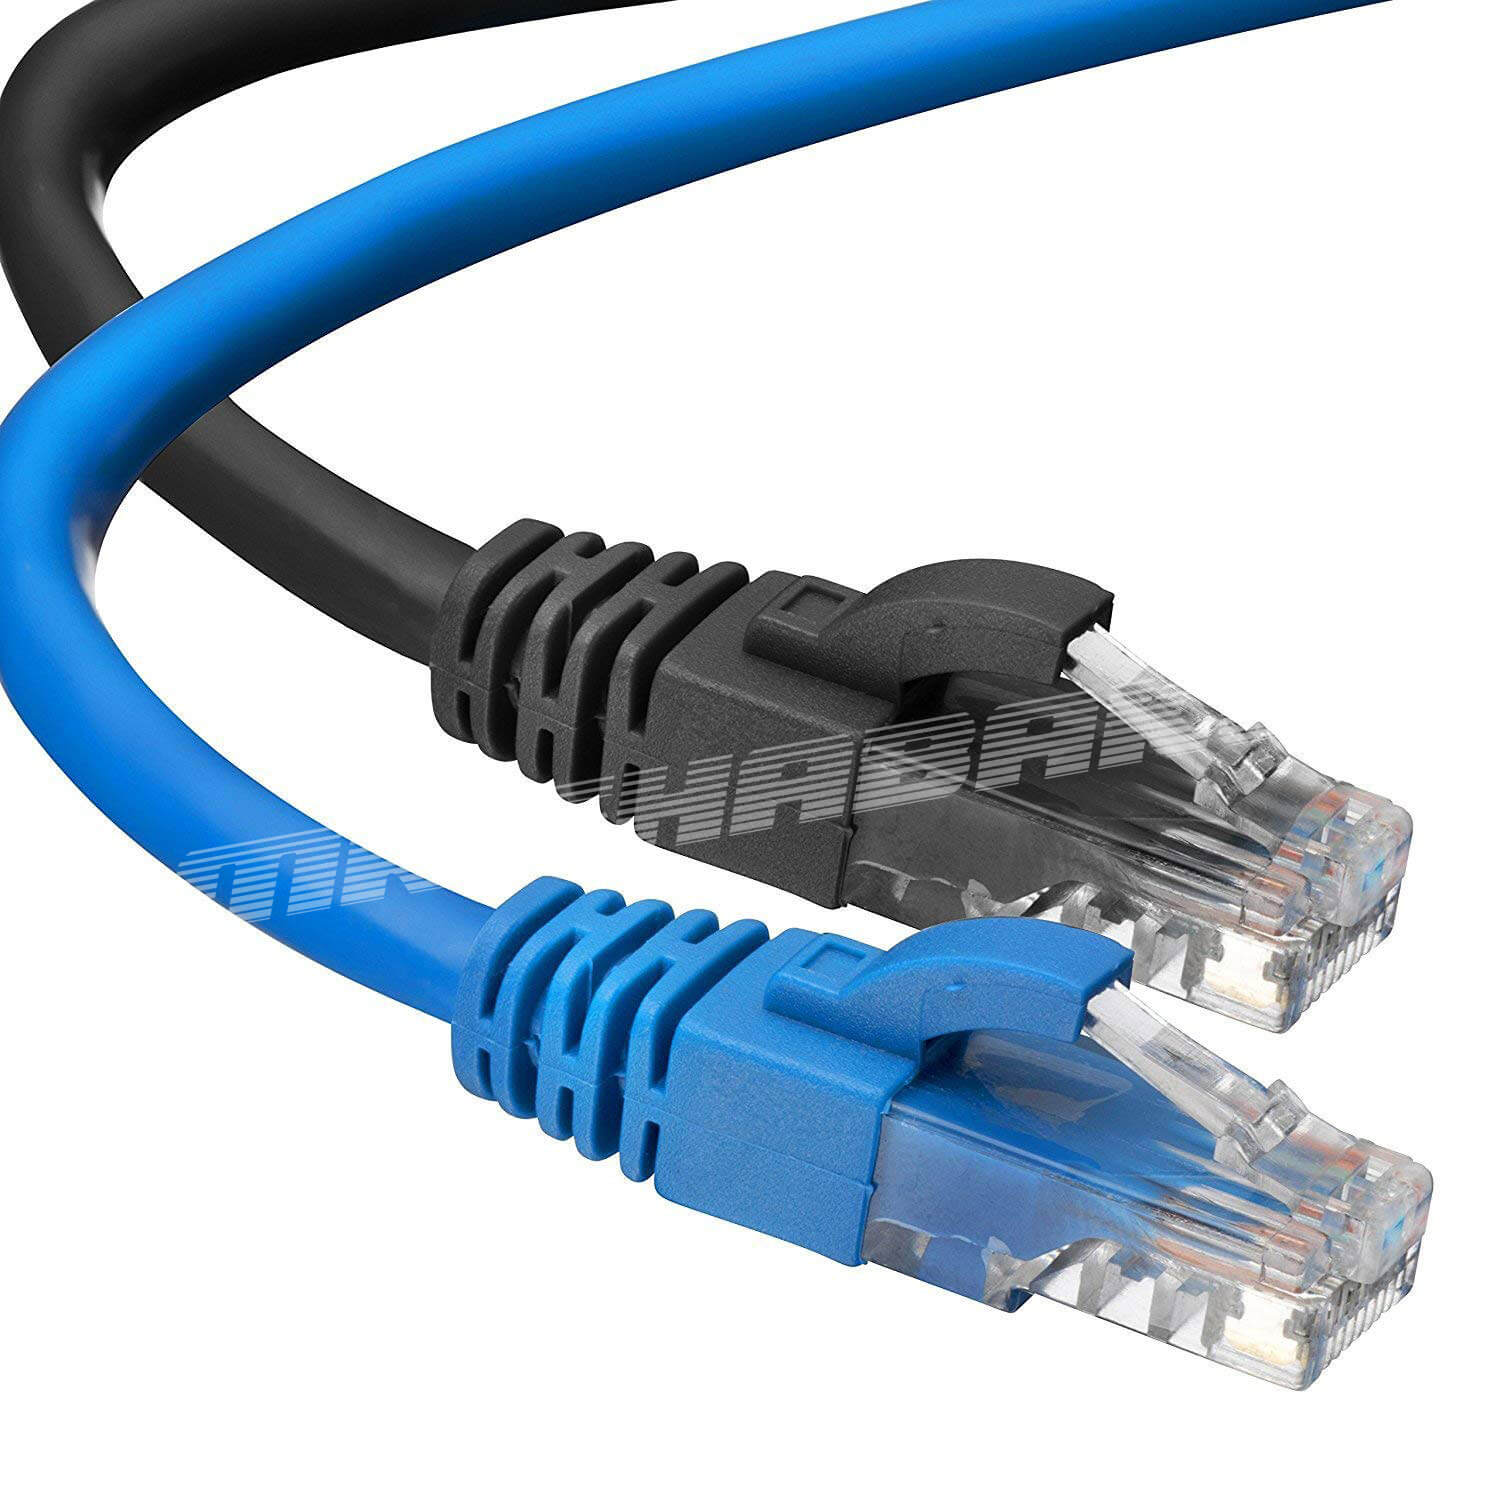 لیست محدودیت های فاصله کابل در کابل های اترنت، فیبر،HDMI ، DVI